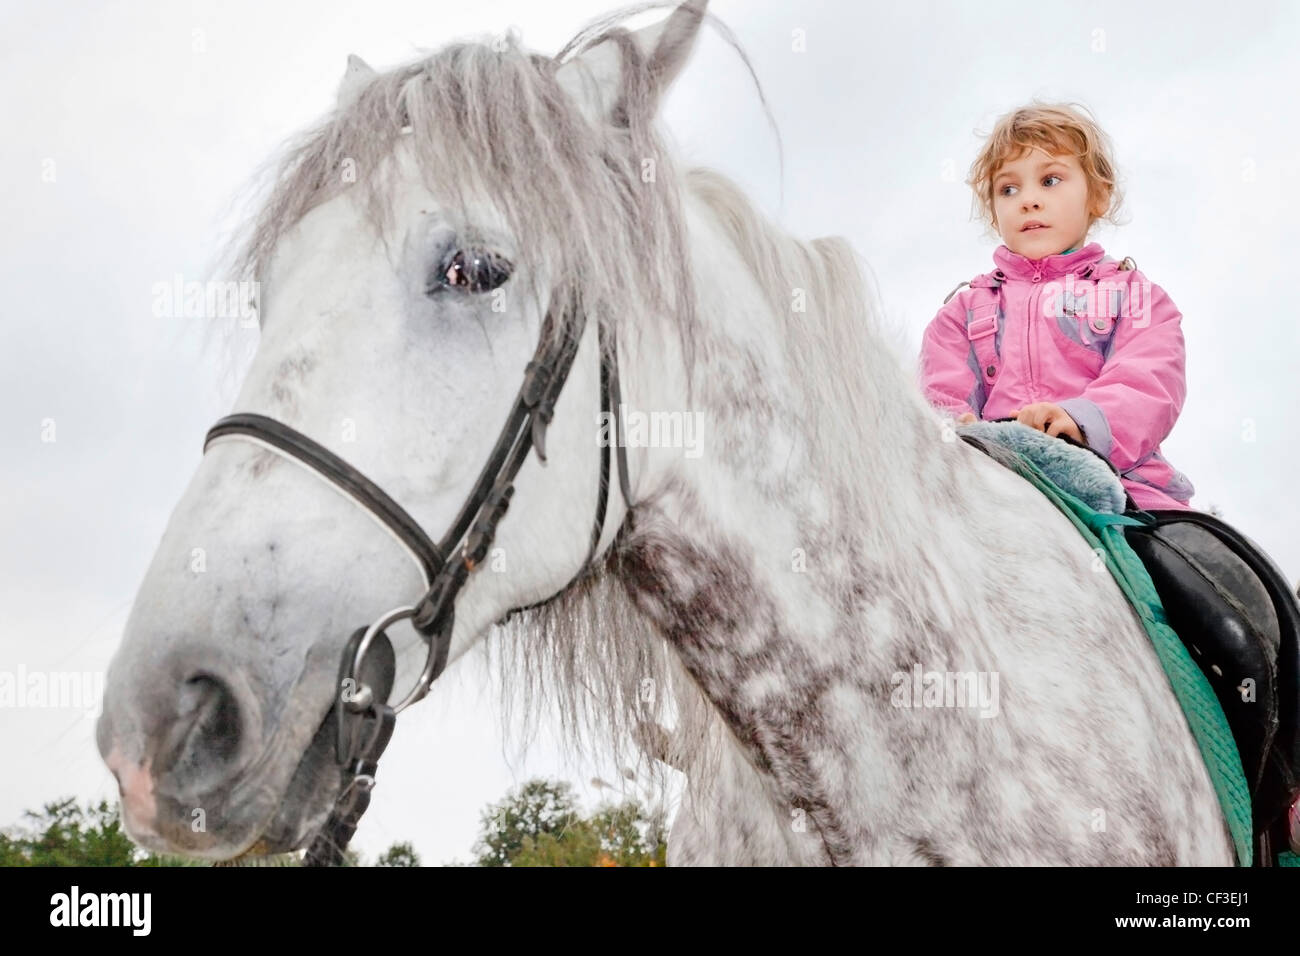 girl riding horse Stock Photo